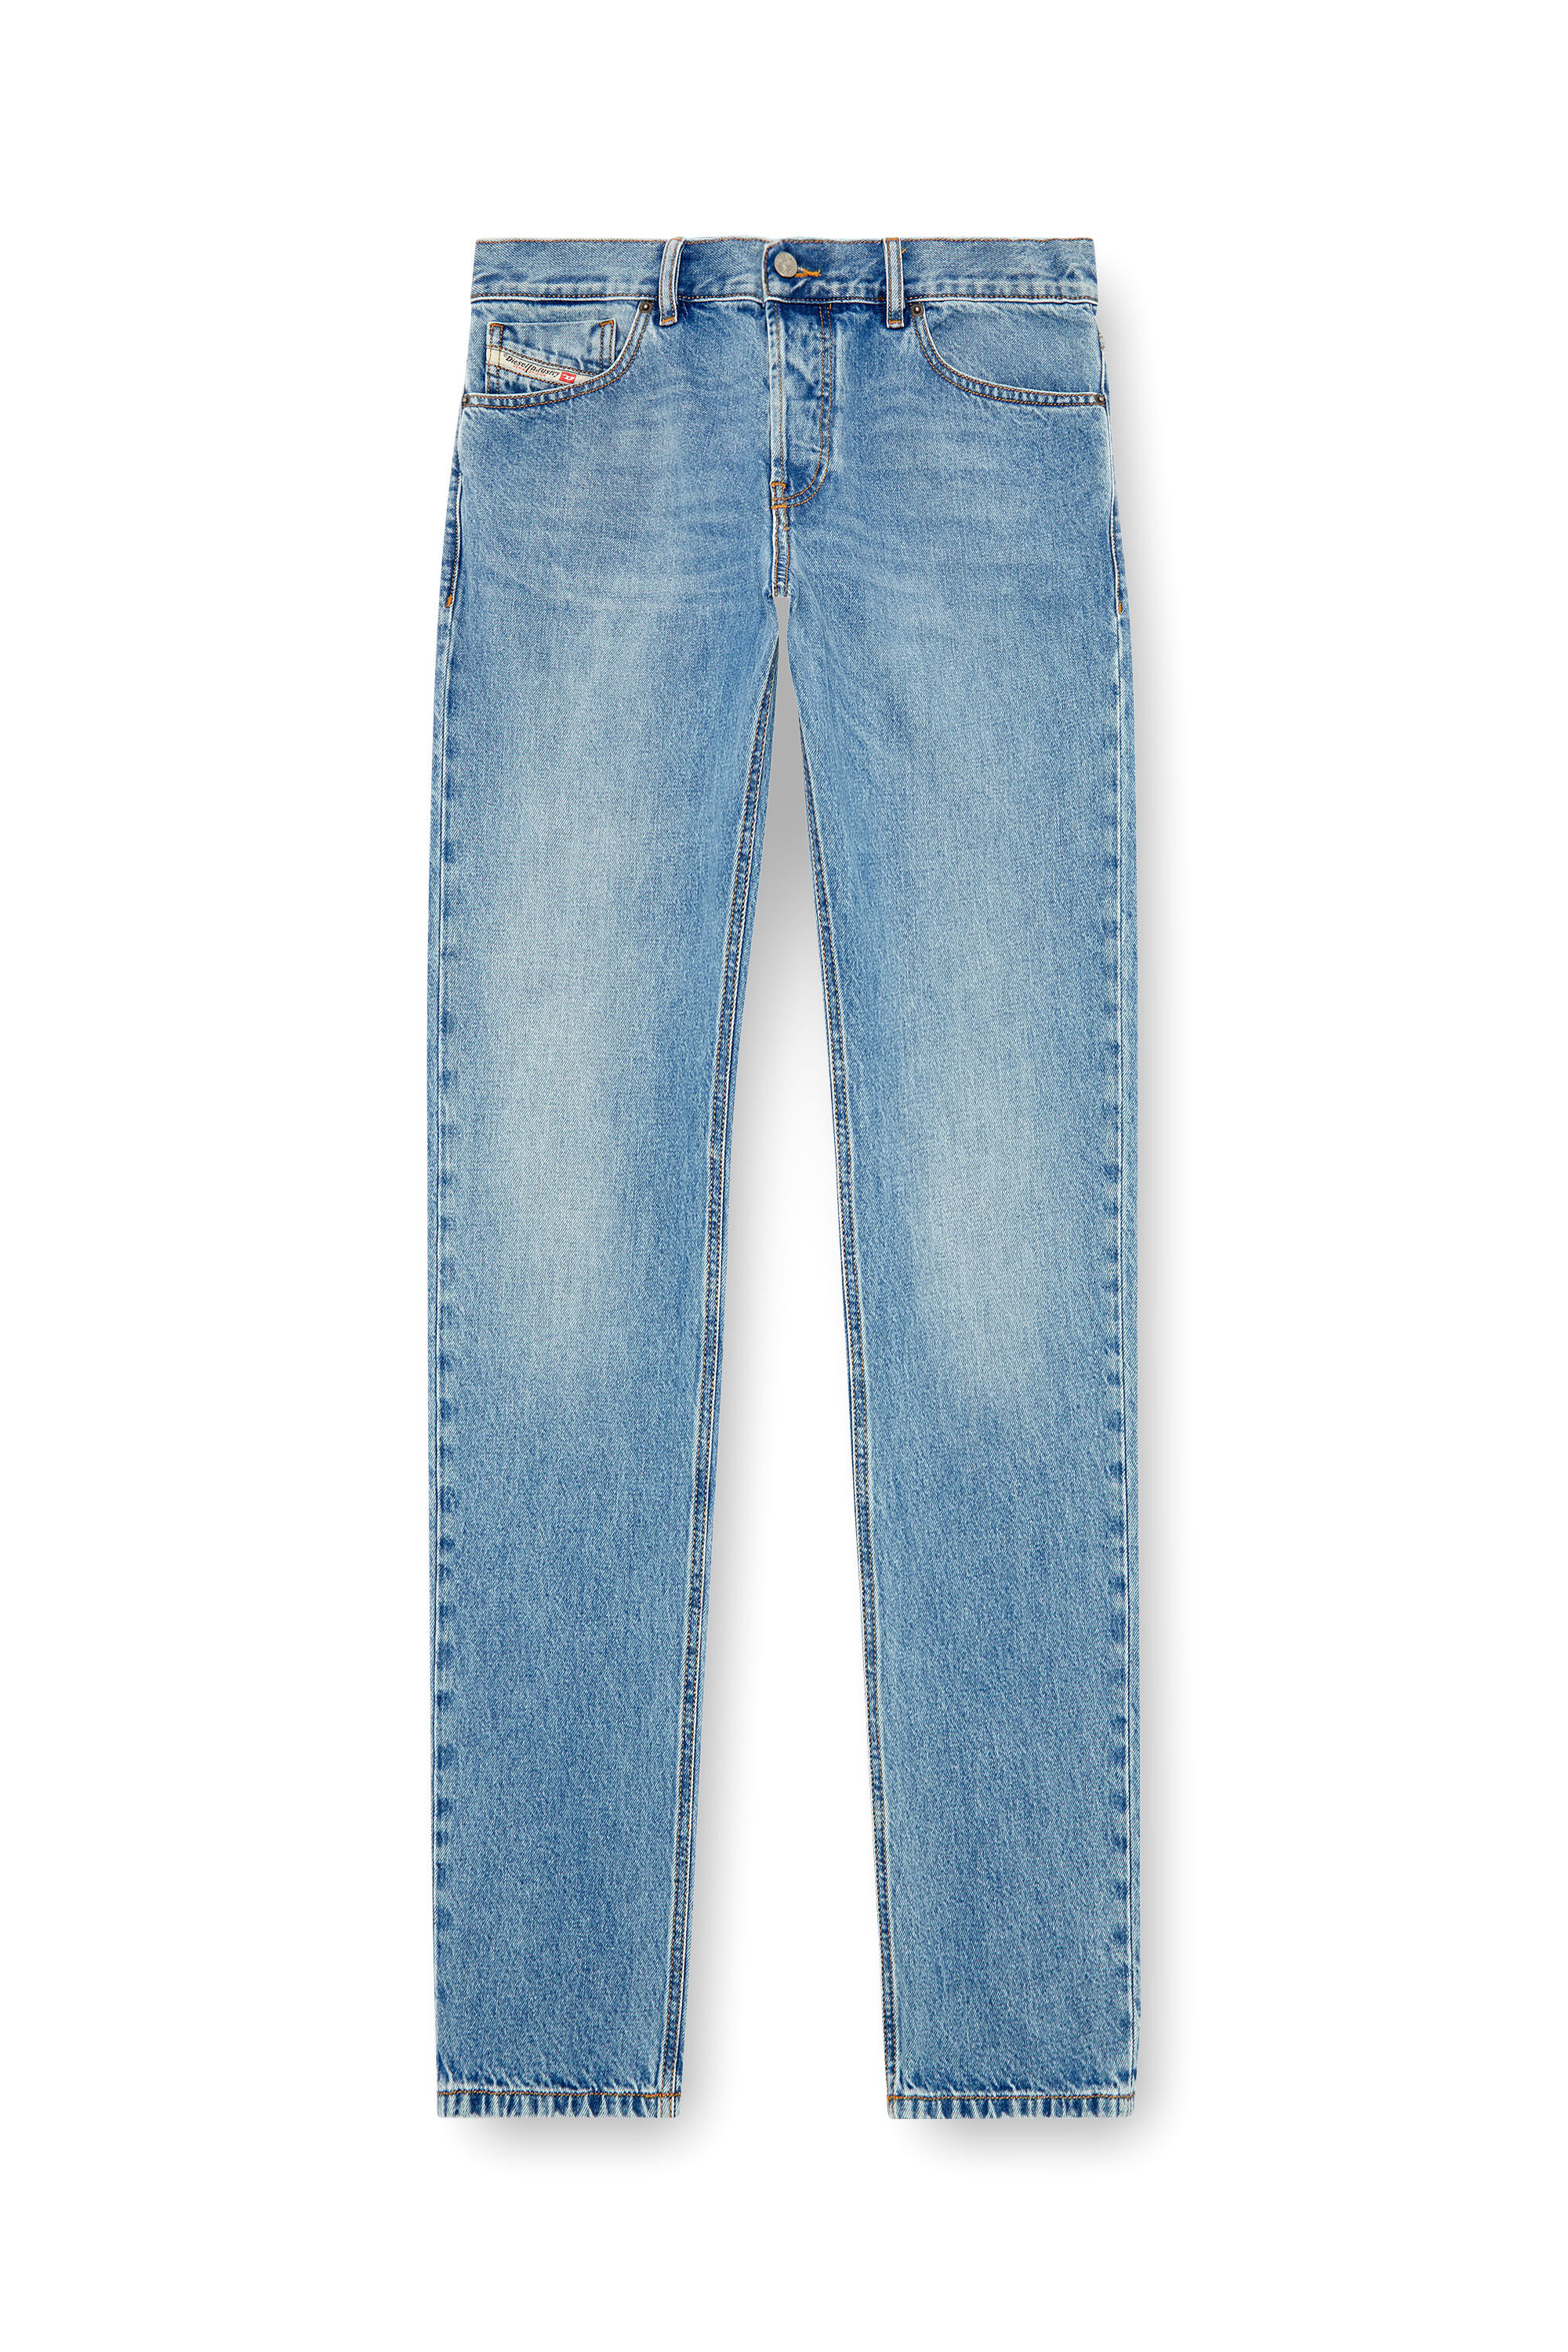 ストレート Jeans - 1995 D-Sark | ライトブルー | メンズ | DIESEL